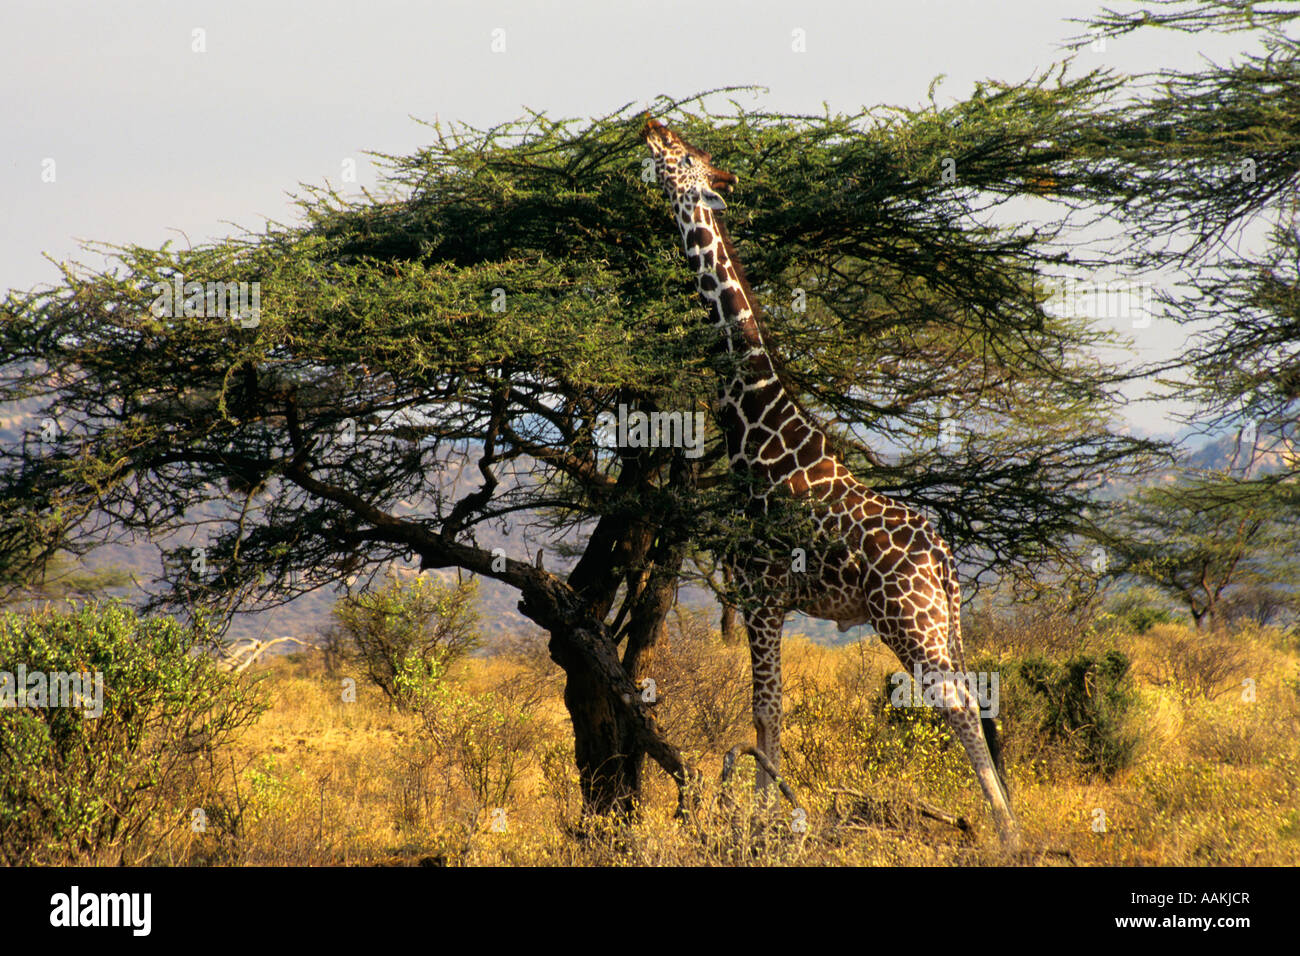 GIRAFFE Giraffa camelopardalis REACHING TOP OF TREE IN KENYA Stock Photo